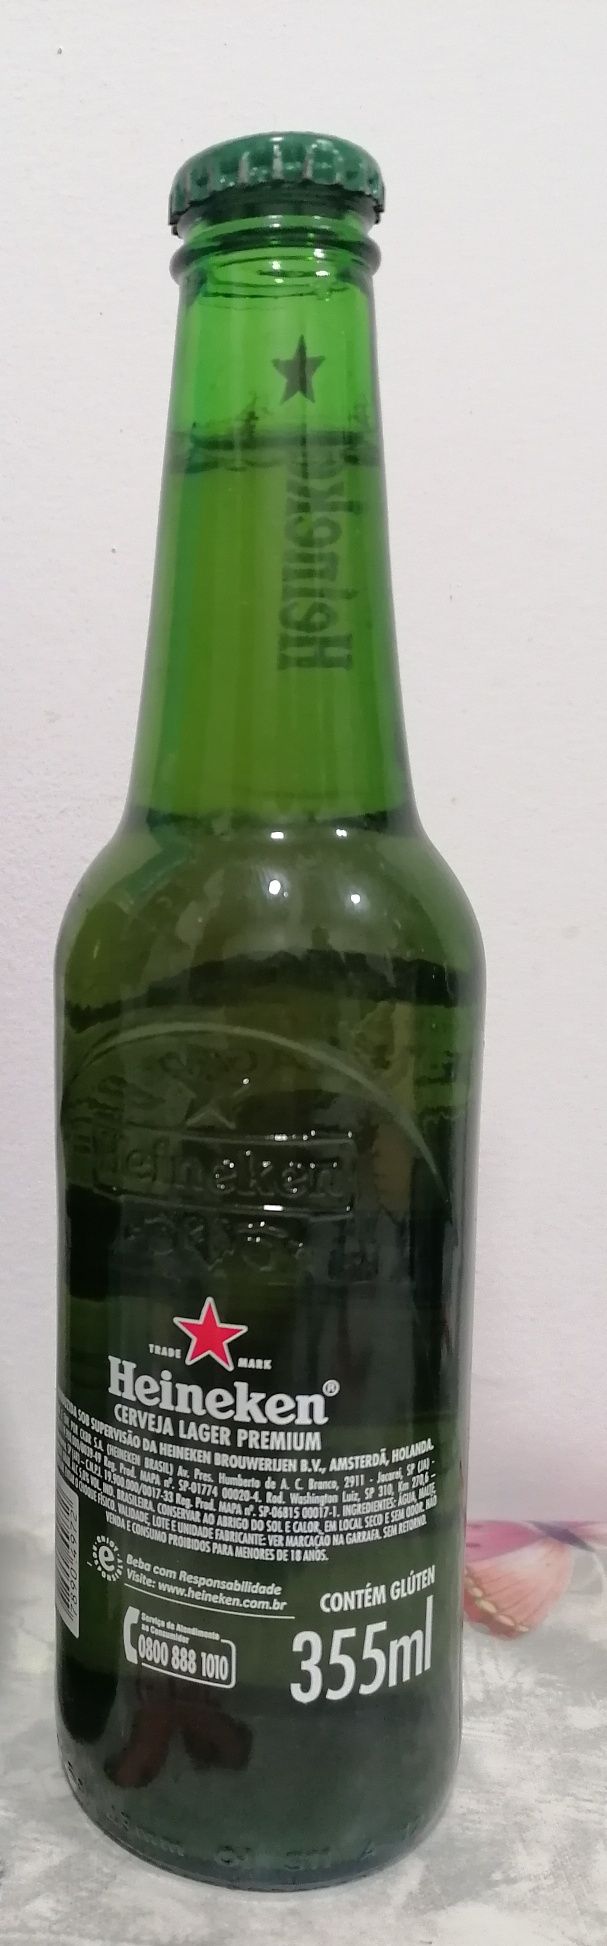 Garrafa da cerveja Heineken, 355 ml